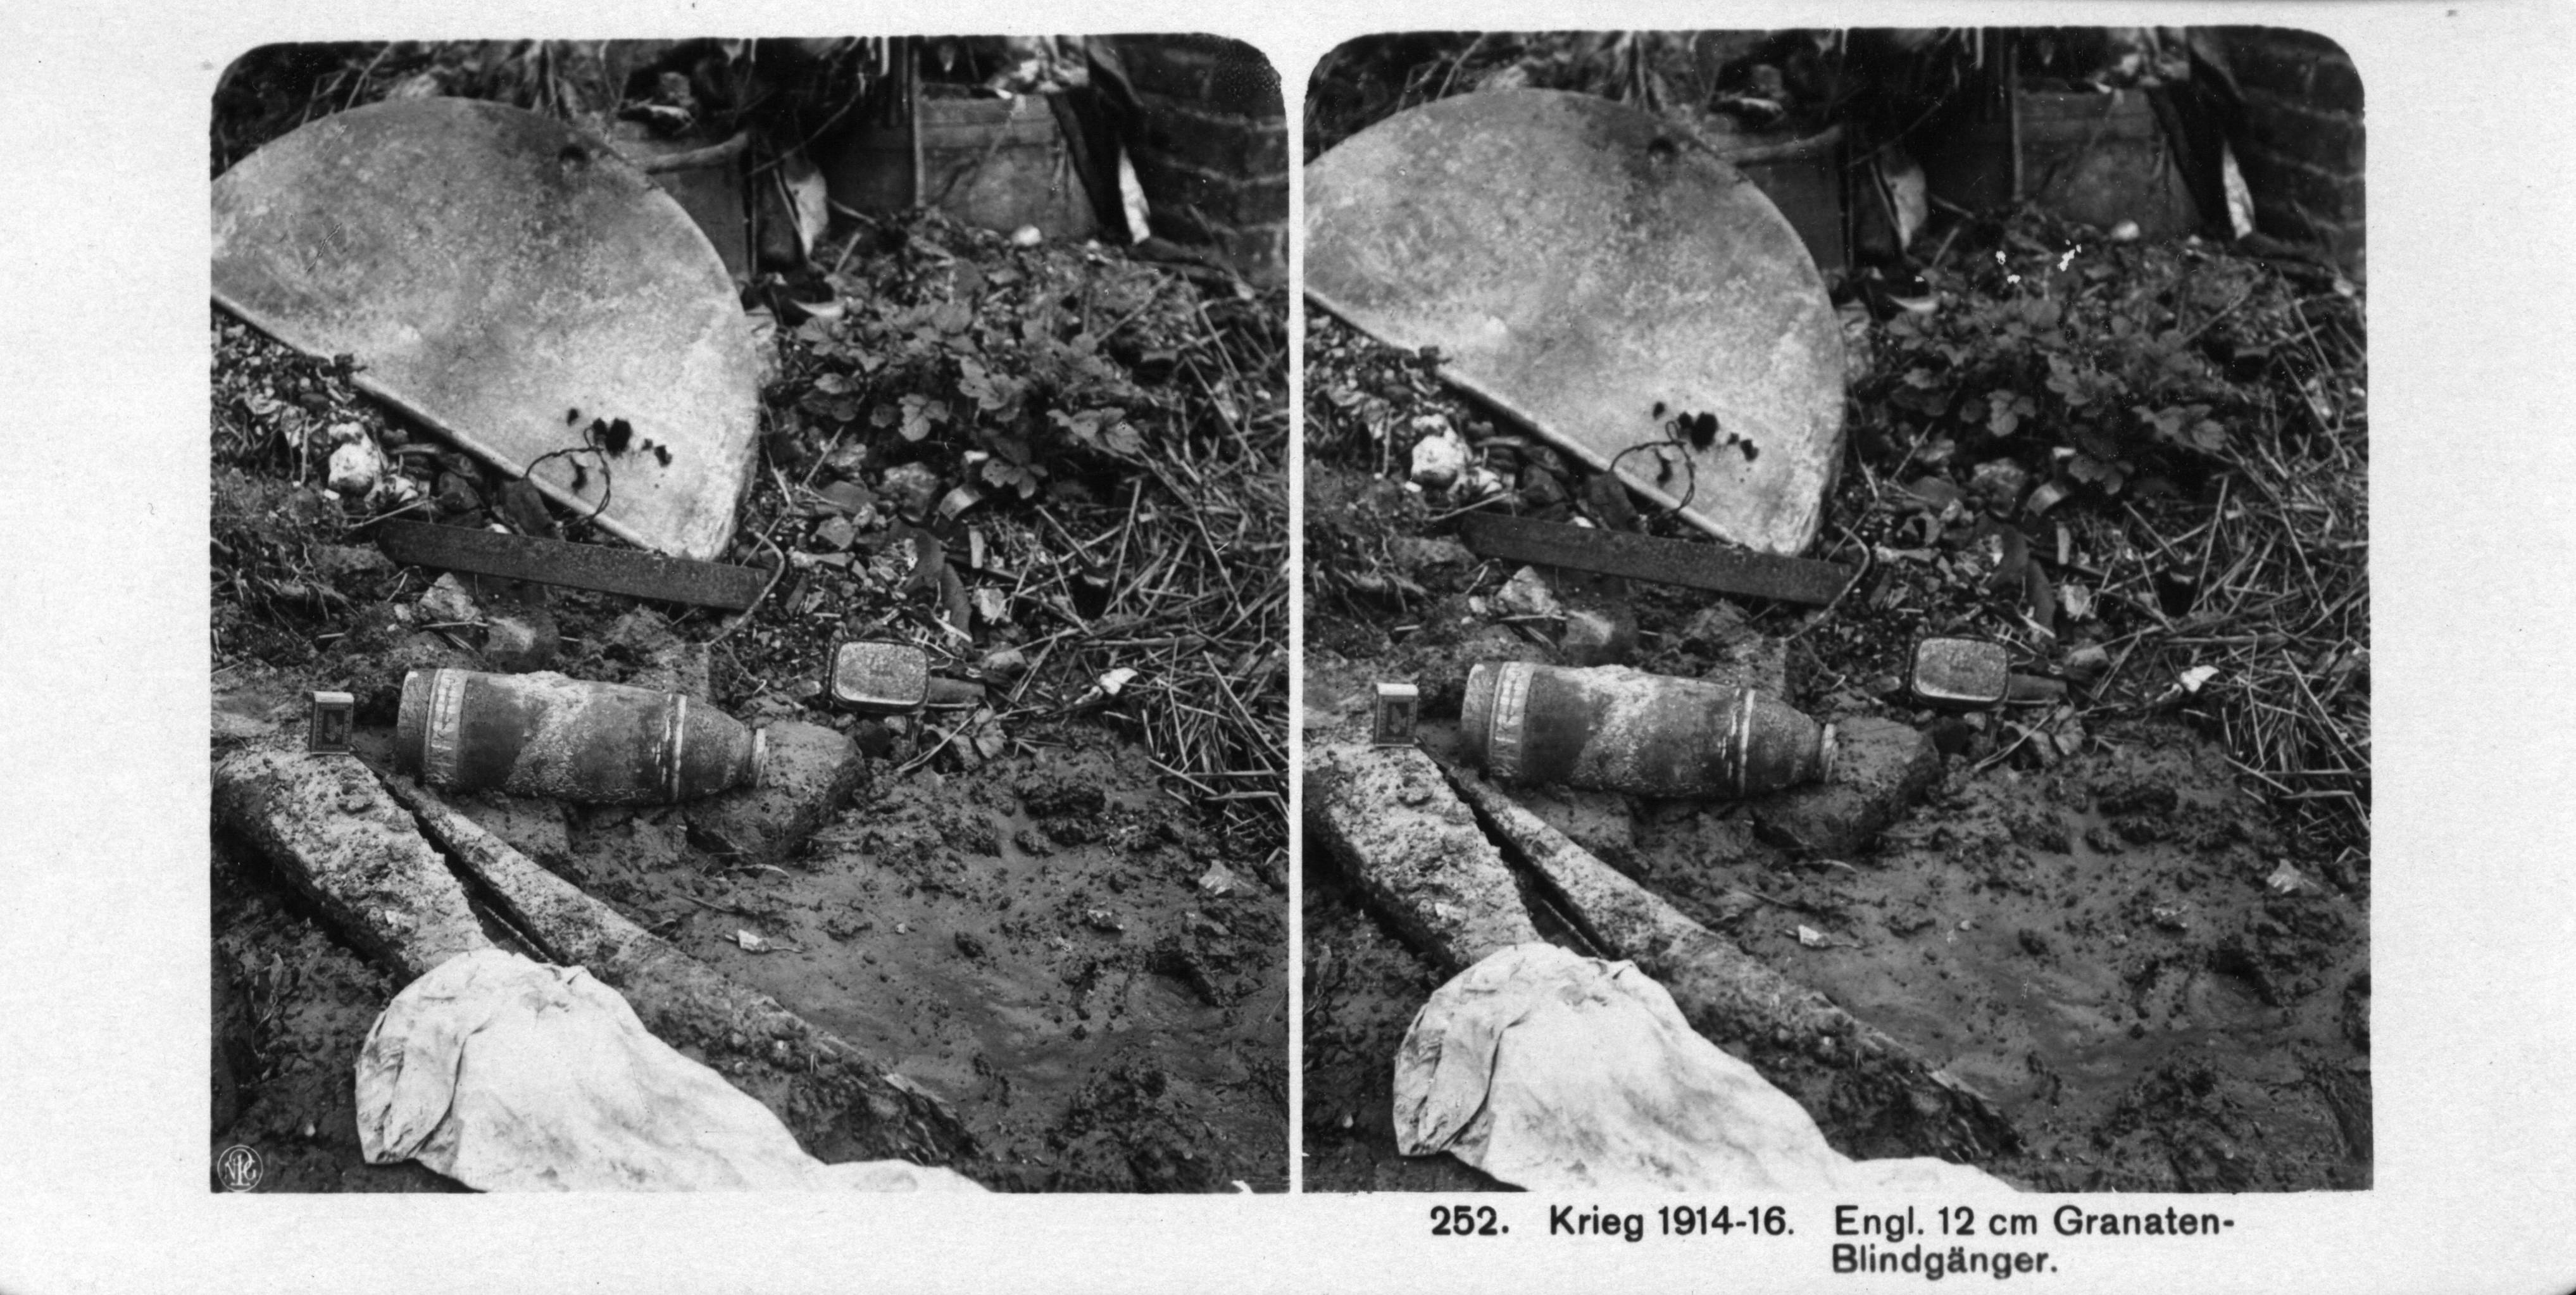 "Engl. 12 cm Granaten-Blindgänger" - Undetonated 12-centimeter British shell.